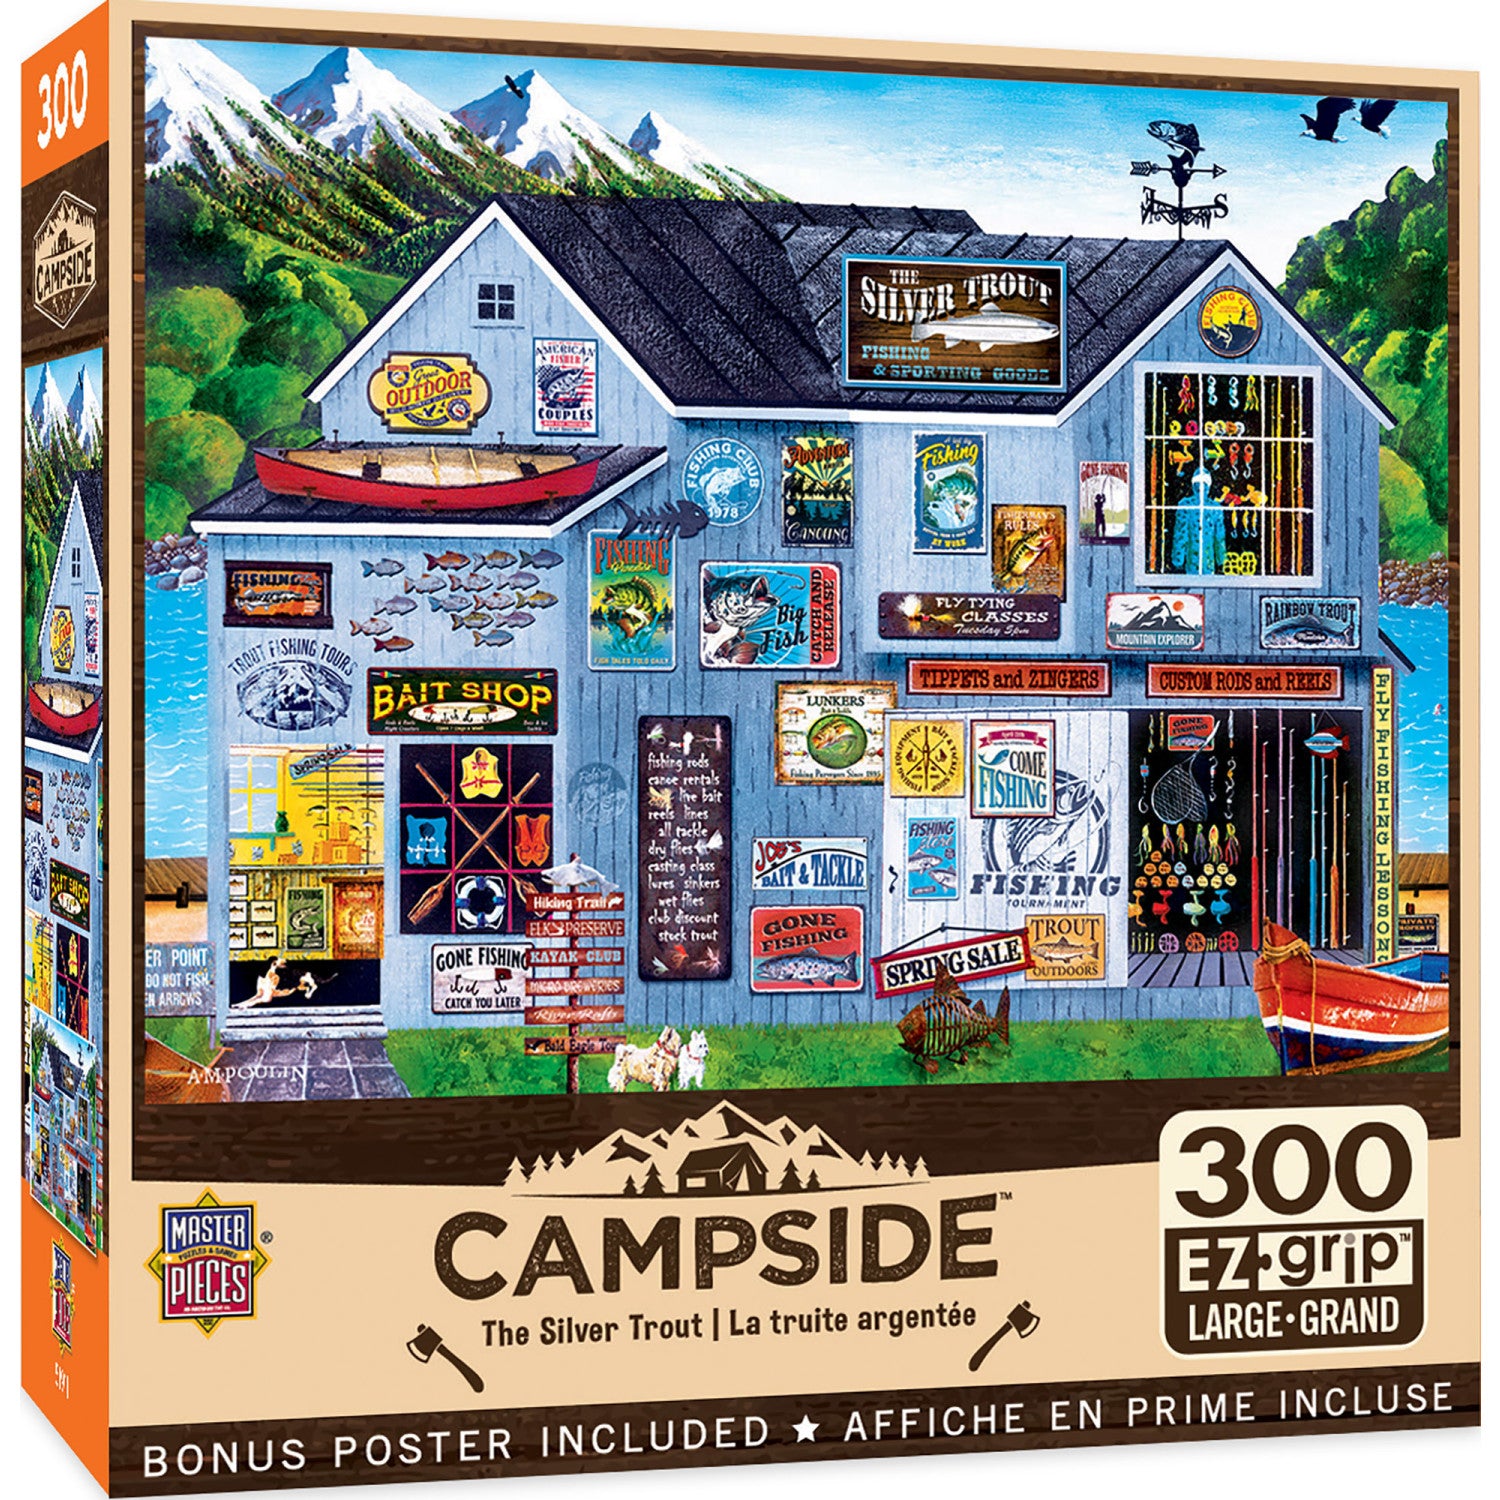 Campside - The Silver Trout 300 Piece EZ Grip Puzzle